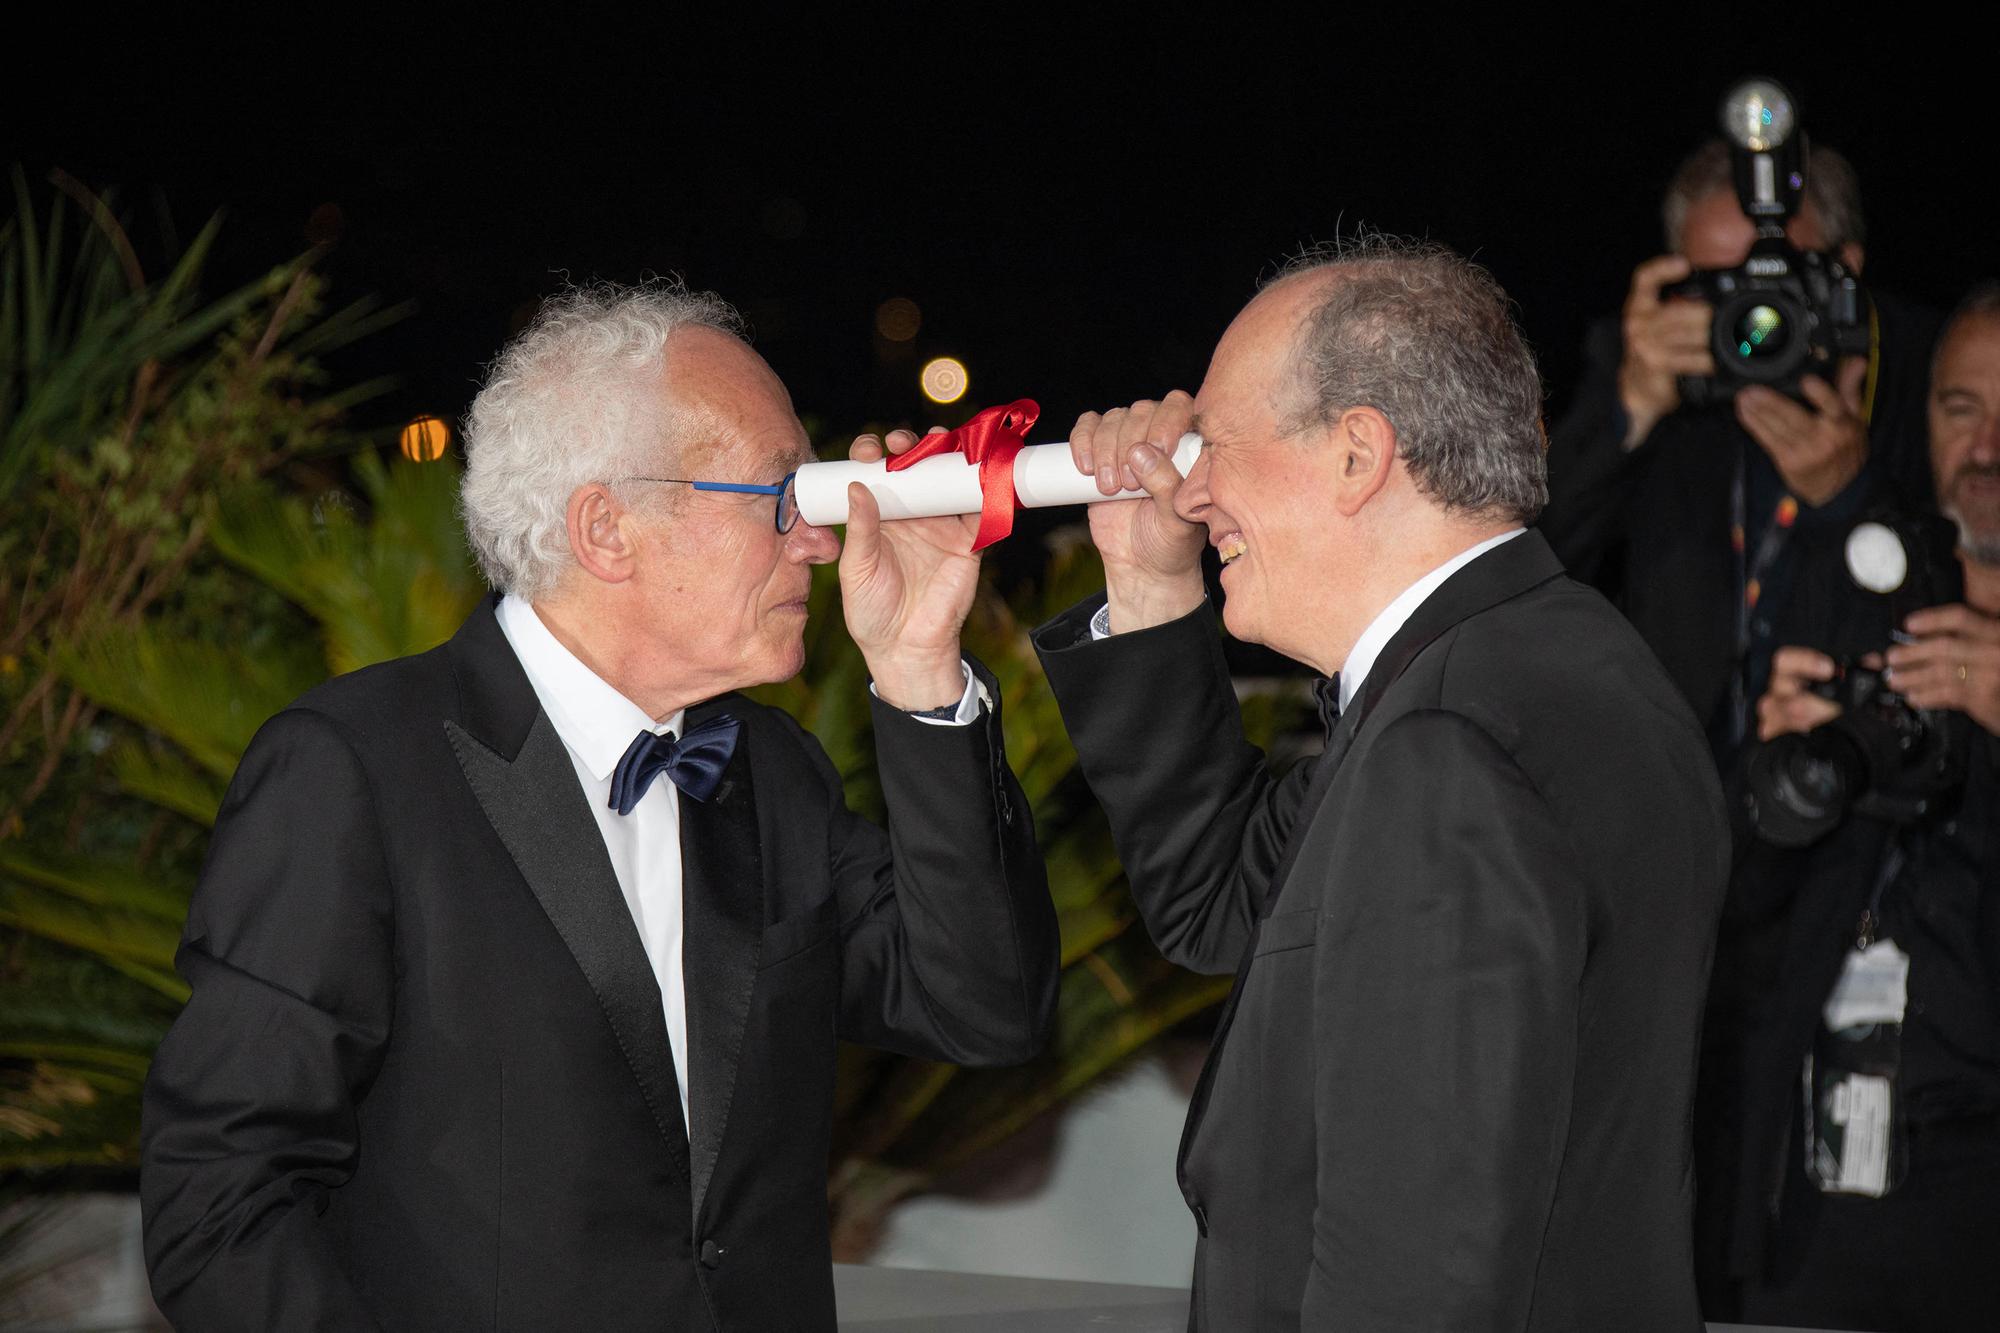 Les réalisateurs Jean-Pierre Dardenne (à gauche) et Luc Dardenne ont reçu le Prix spécial 75e anniversaire pour leur film "Tori et Lokita". [Anadolu Agency via AFP - Philip Rock]